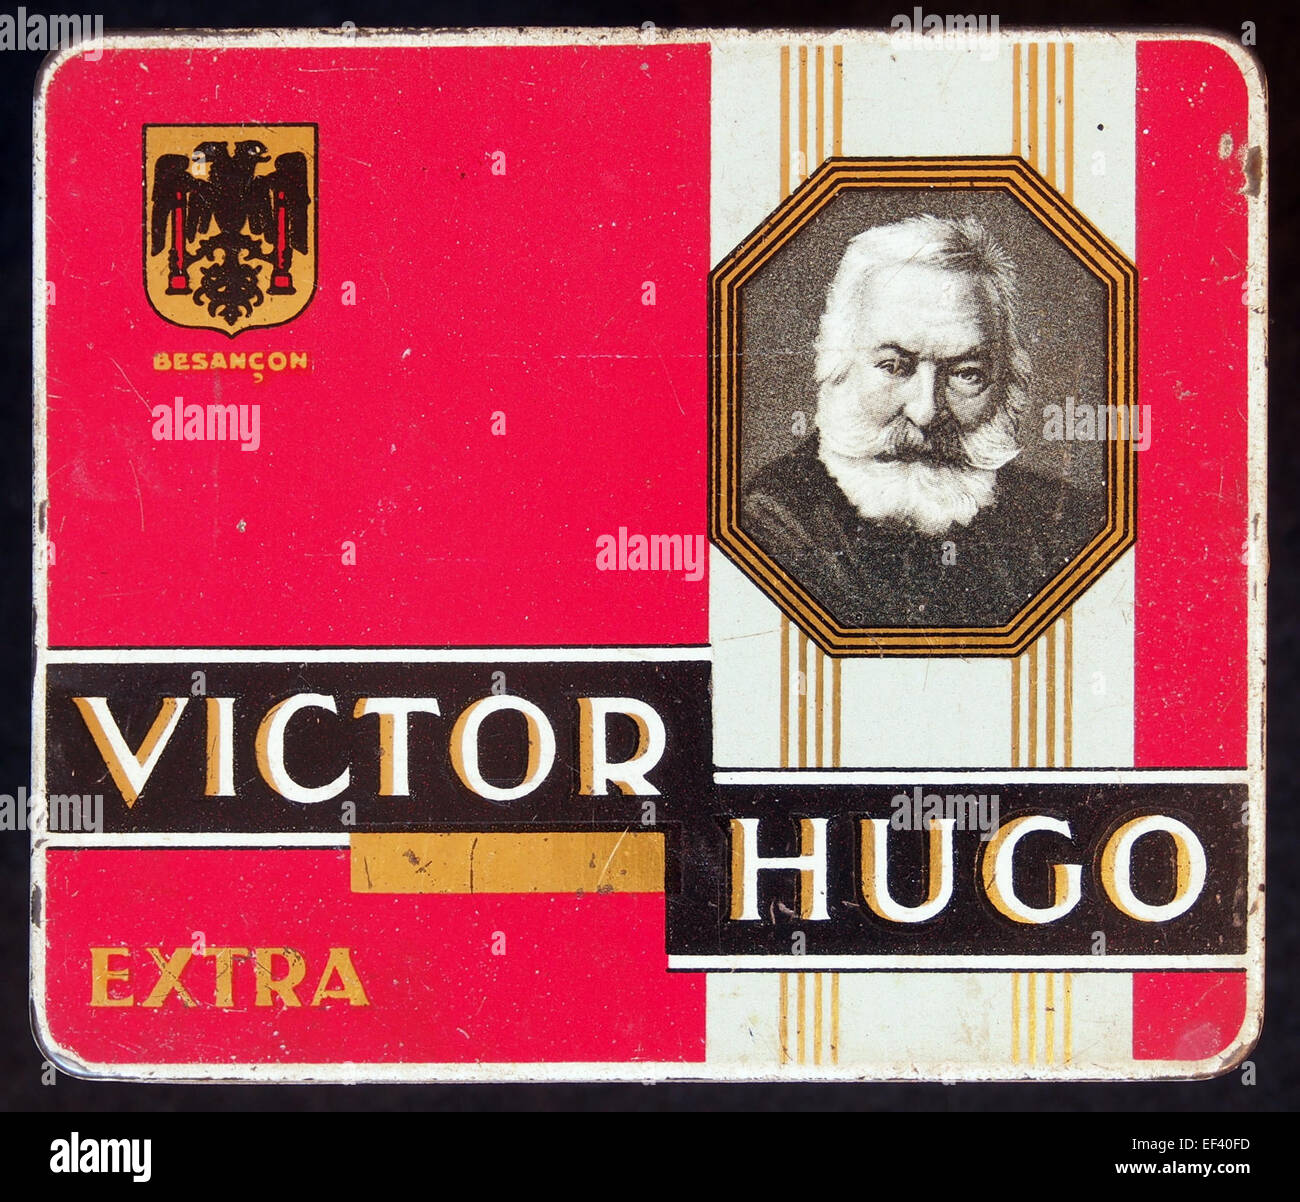 Victor Hugo sigarenblikje Extra dunnere lijst Foto Stock